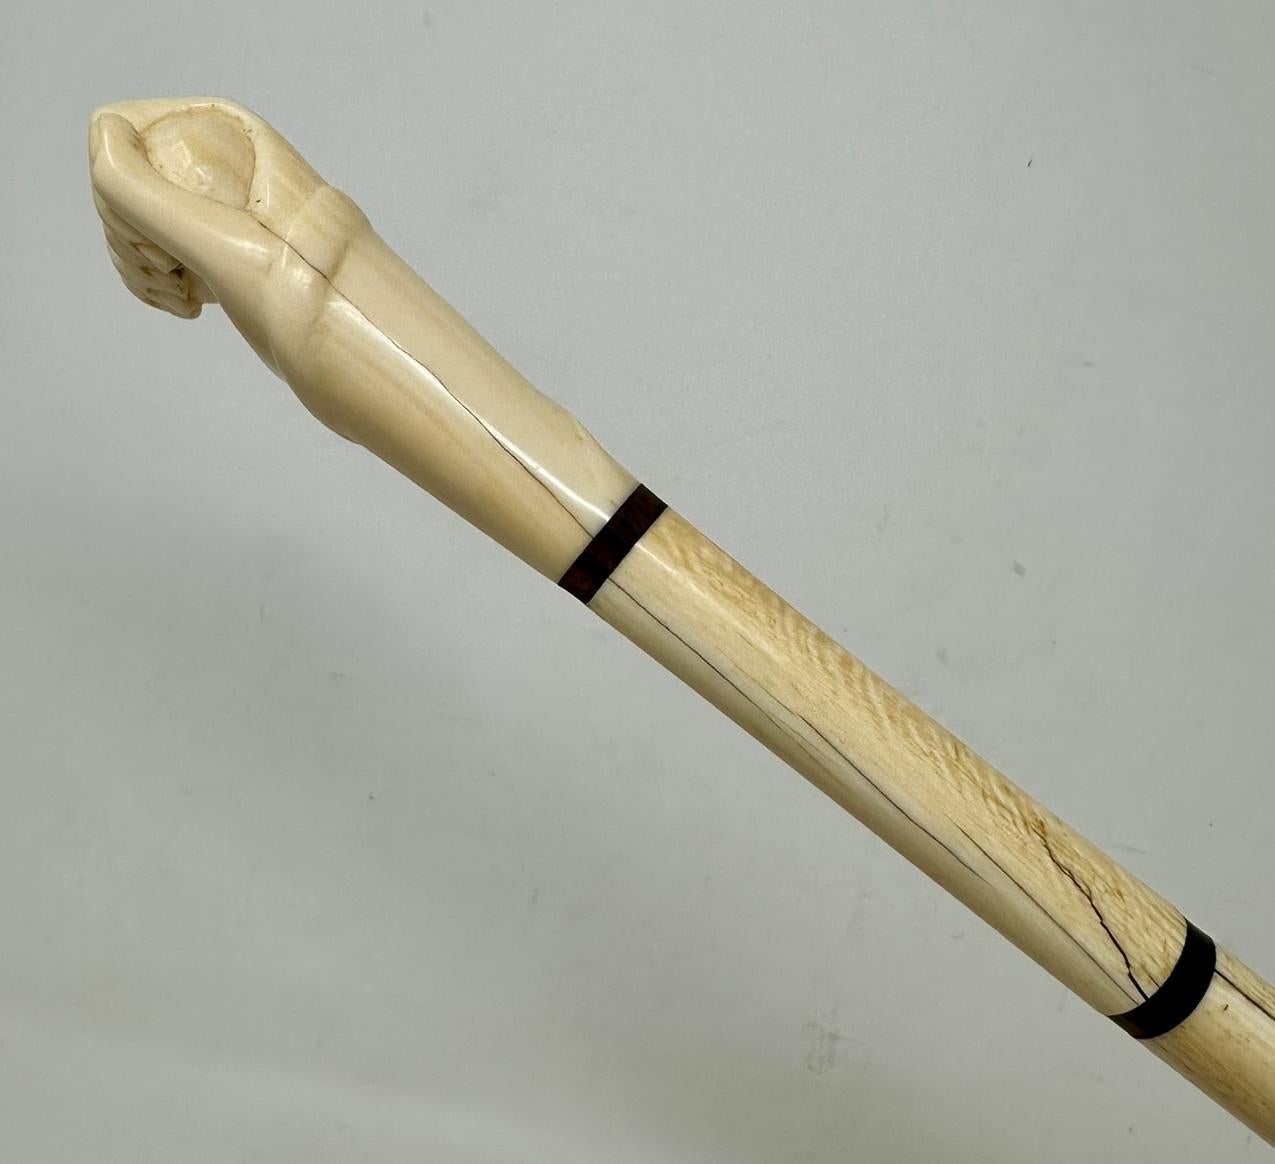 Ein sehr schönes und seltenes Beispiel für einen Marin's Whale Bone Walking Cane von außergewöhnlicher Qualität. Erste Hälfte des neunzehnten Jahrhunderts, möglicherweise englischen Ursprungs. 

Der handgeschnitzte, dekorative Griff ist als